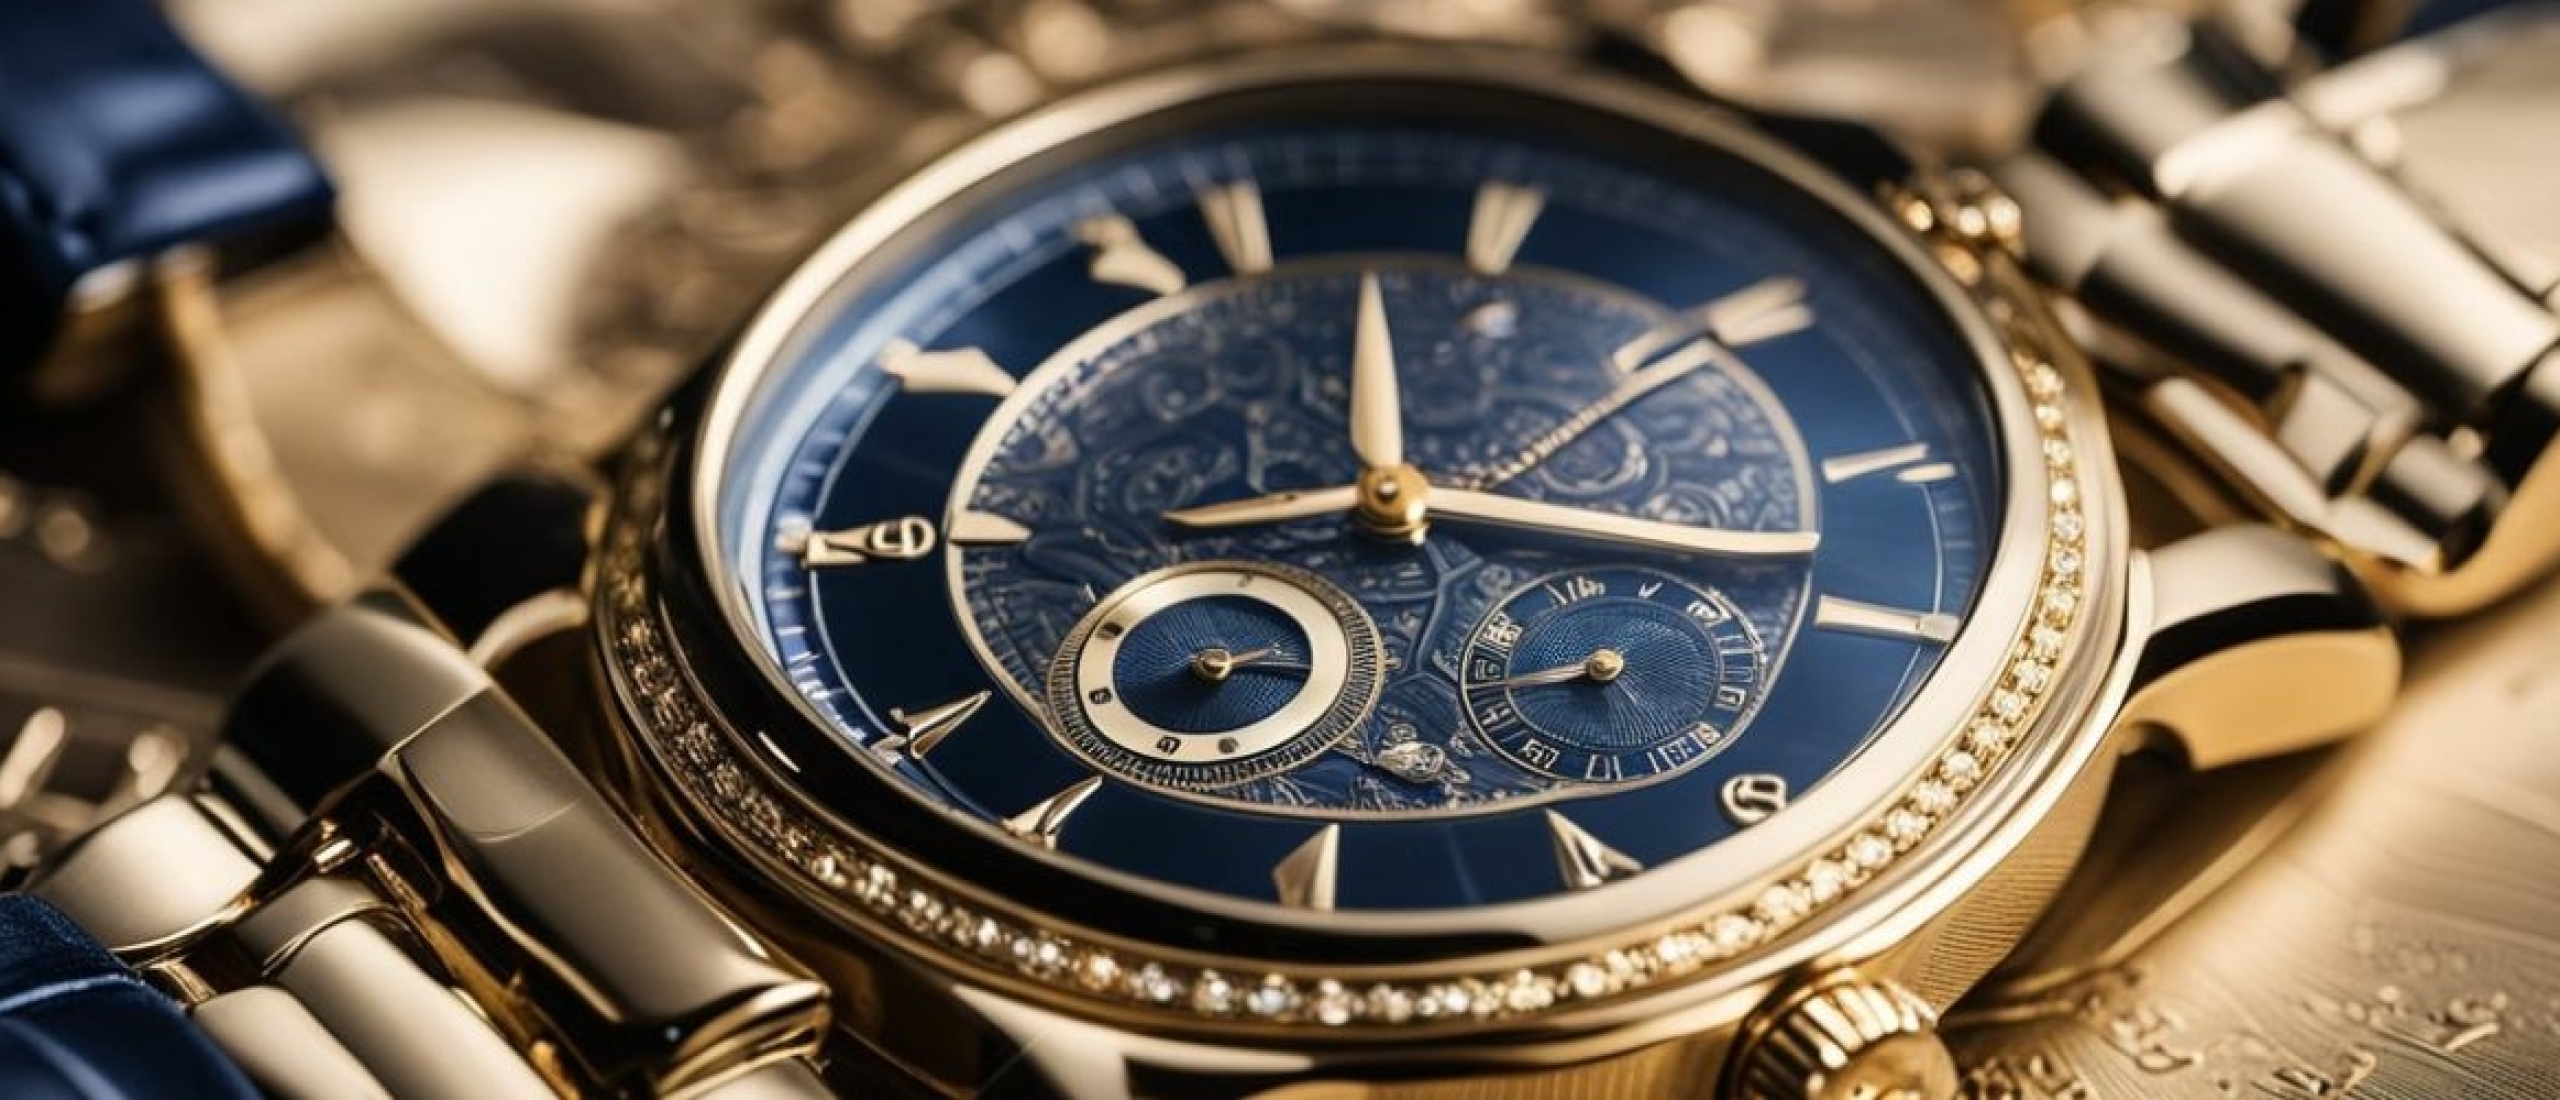 Poinçon de Genève: Een Prestigieus Keurmerk voor Horloges